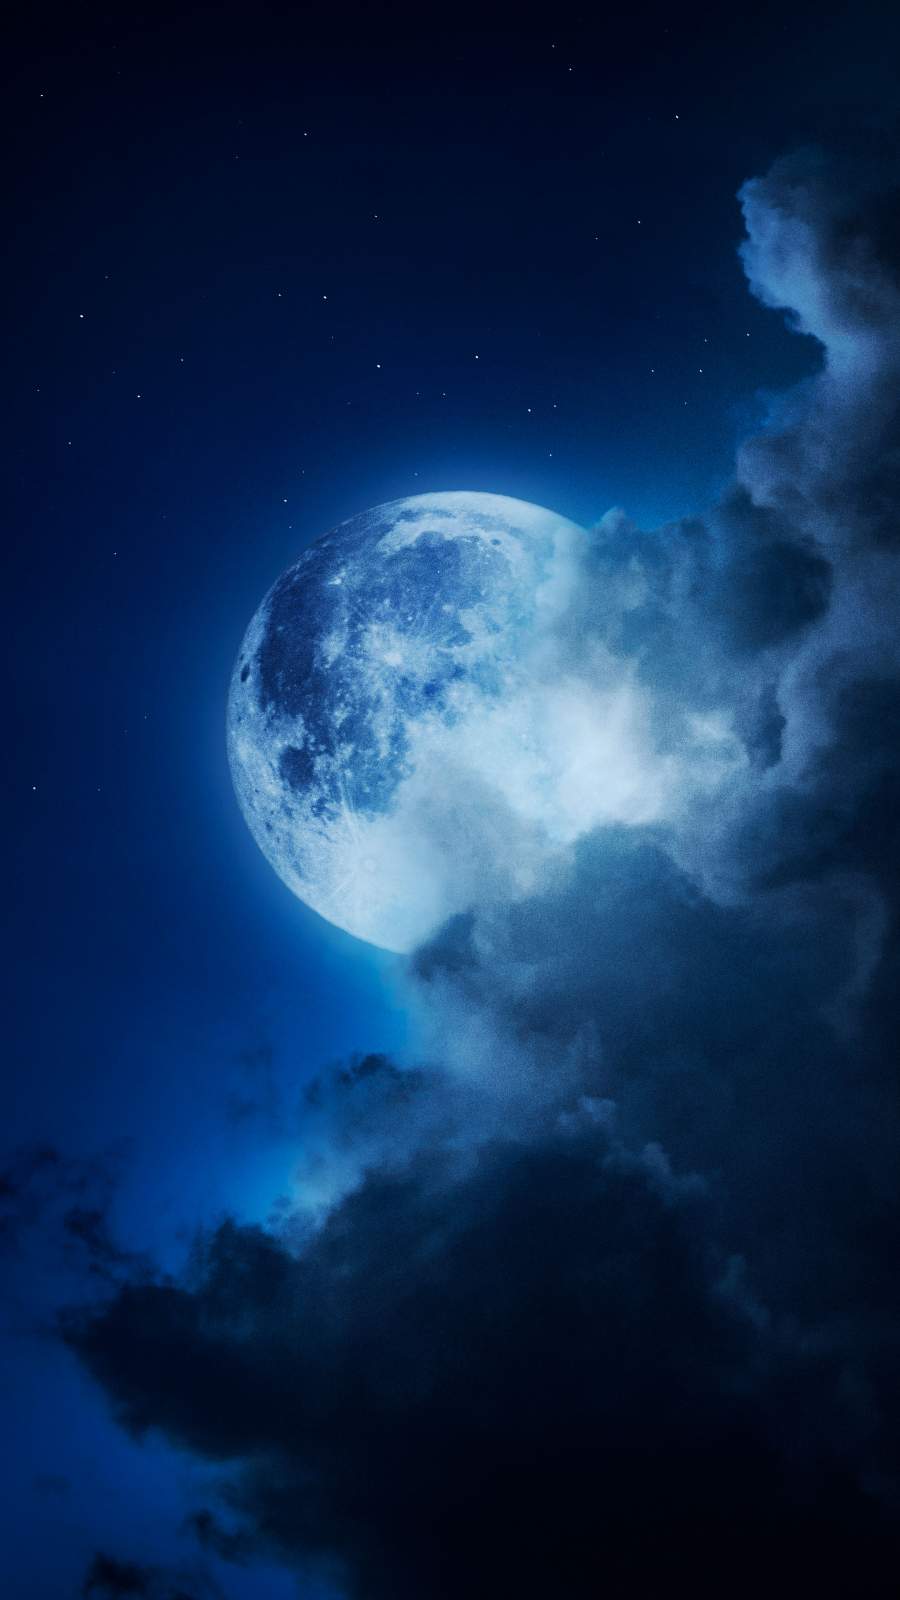 Moon In Cloud IPhone Wallpaper Wallpaper, iPhone Wallpaper